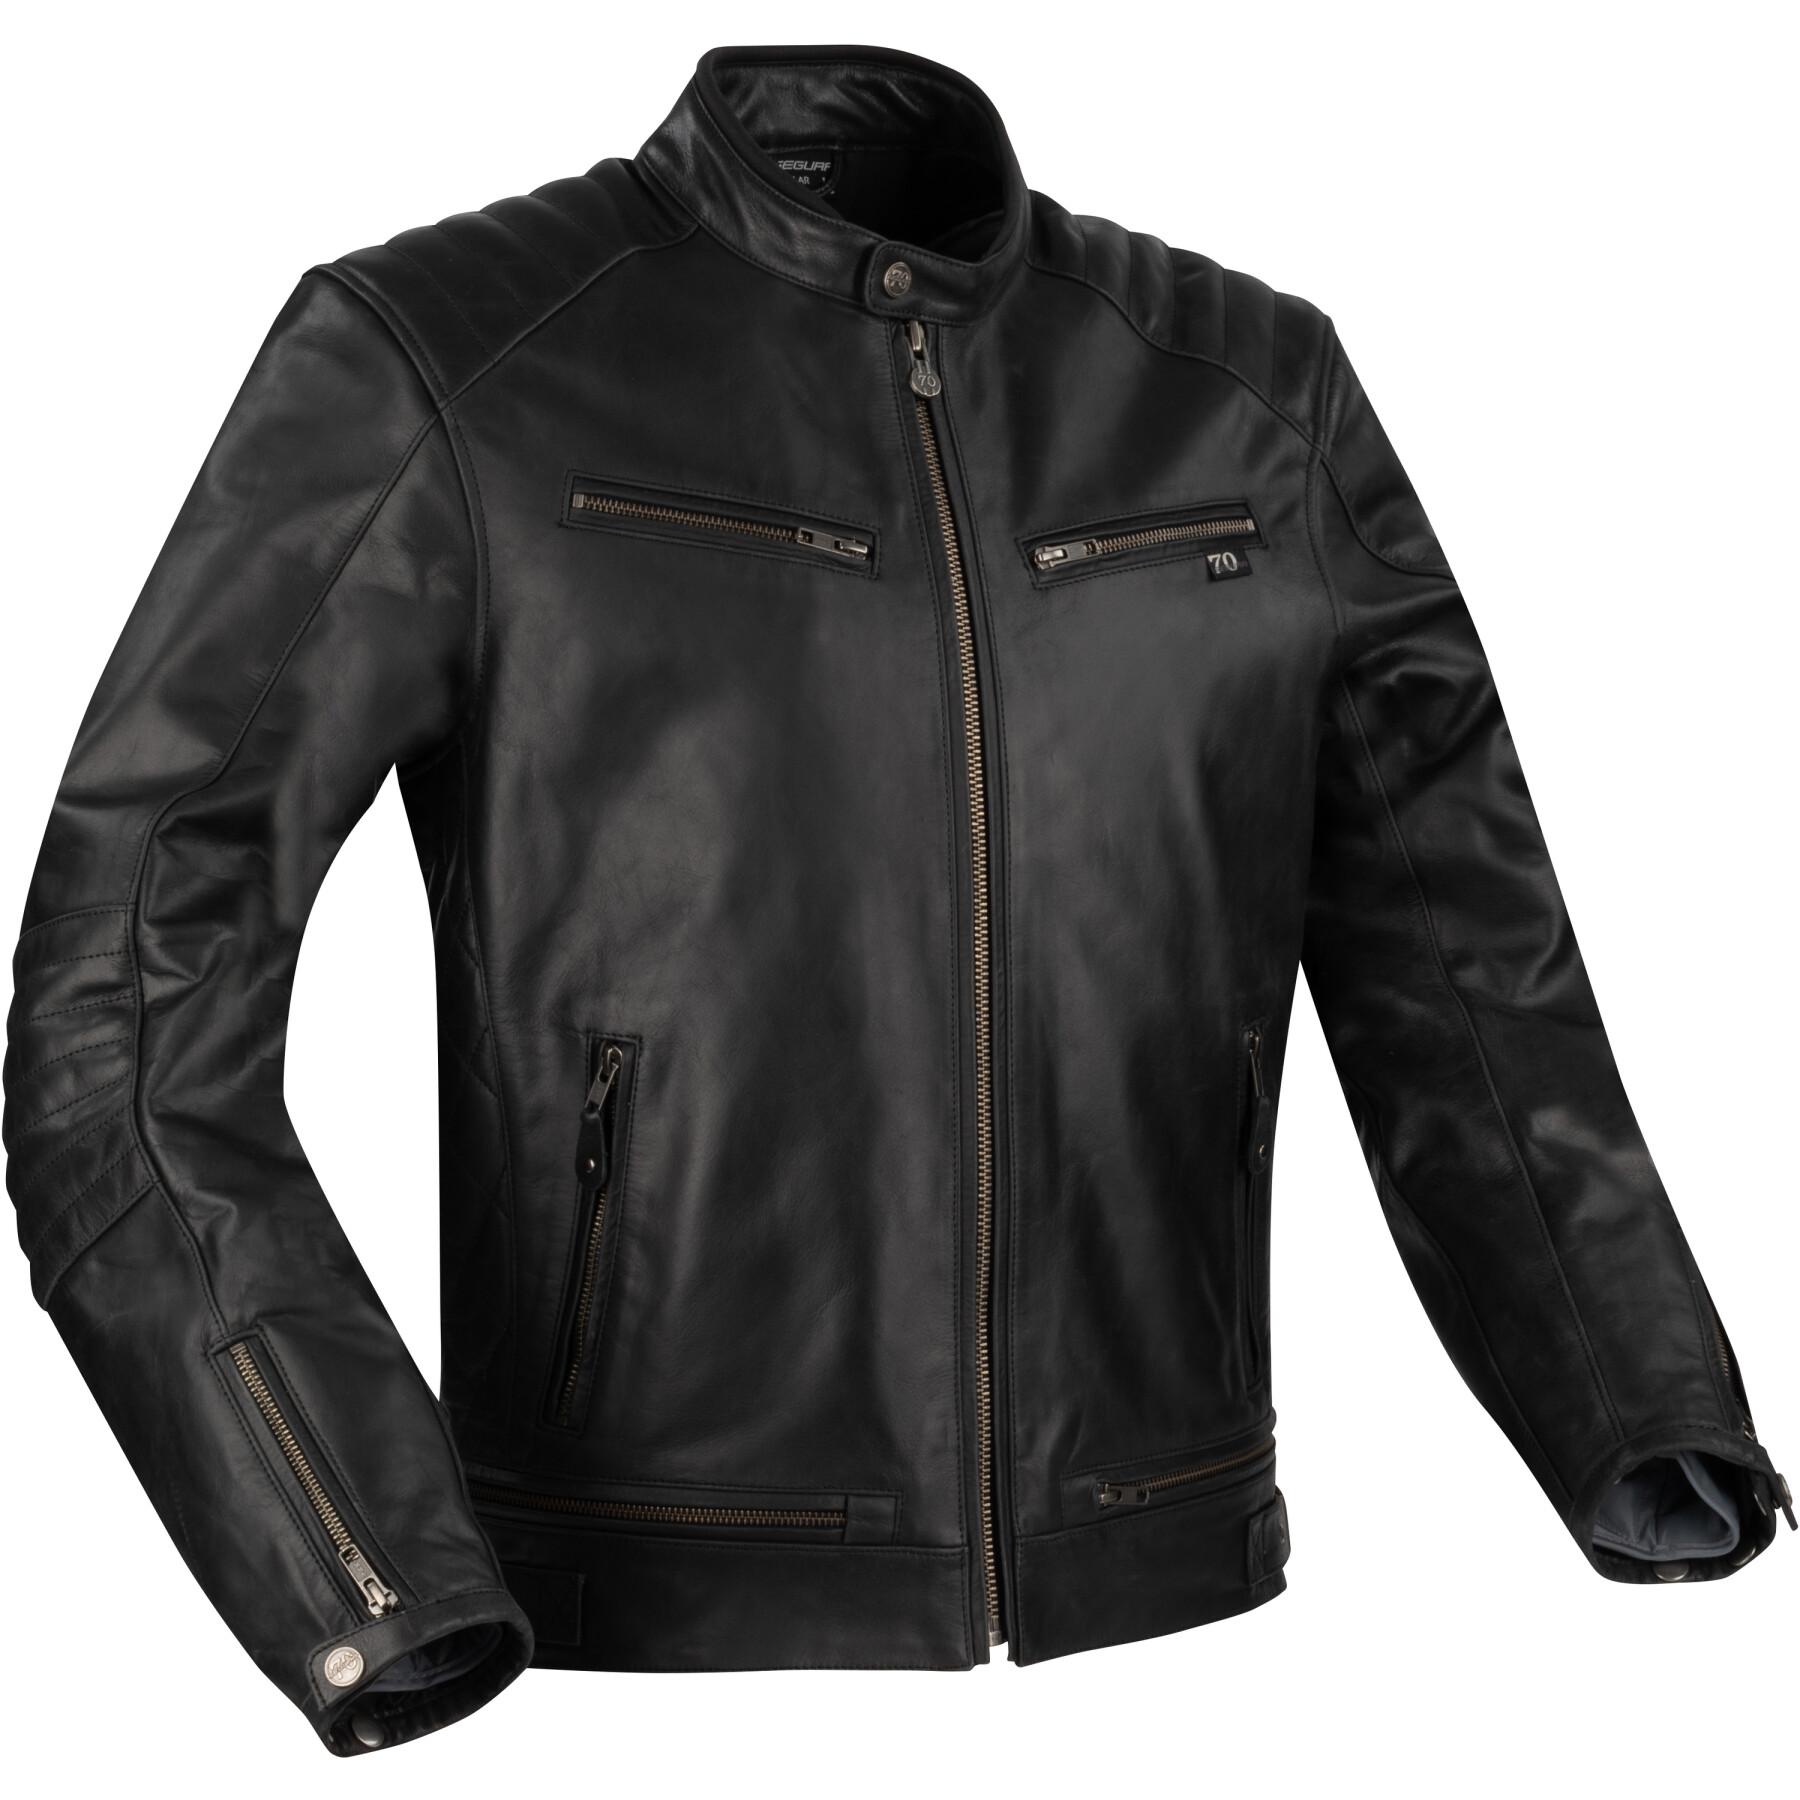 Motorcycle leather jacket Segura owen